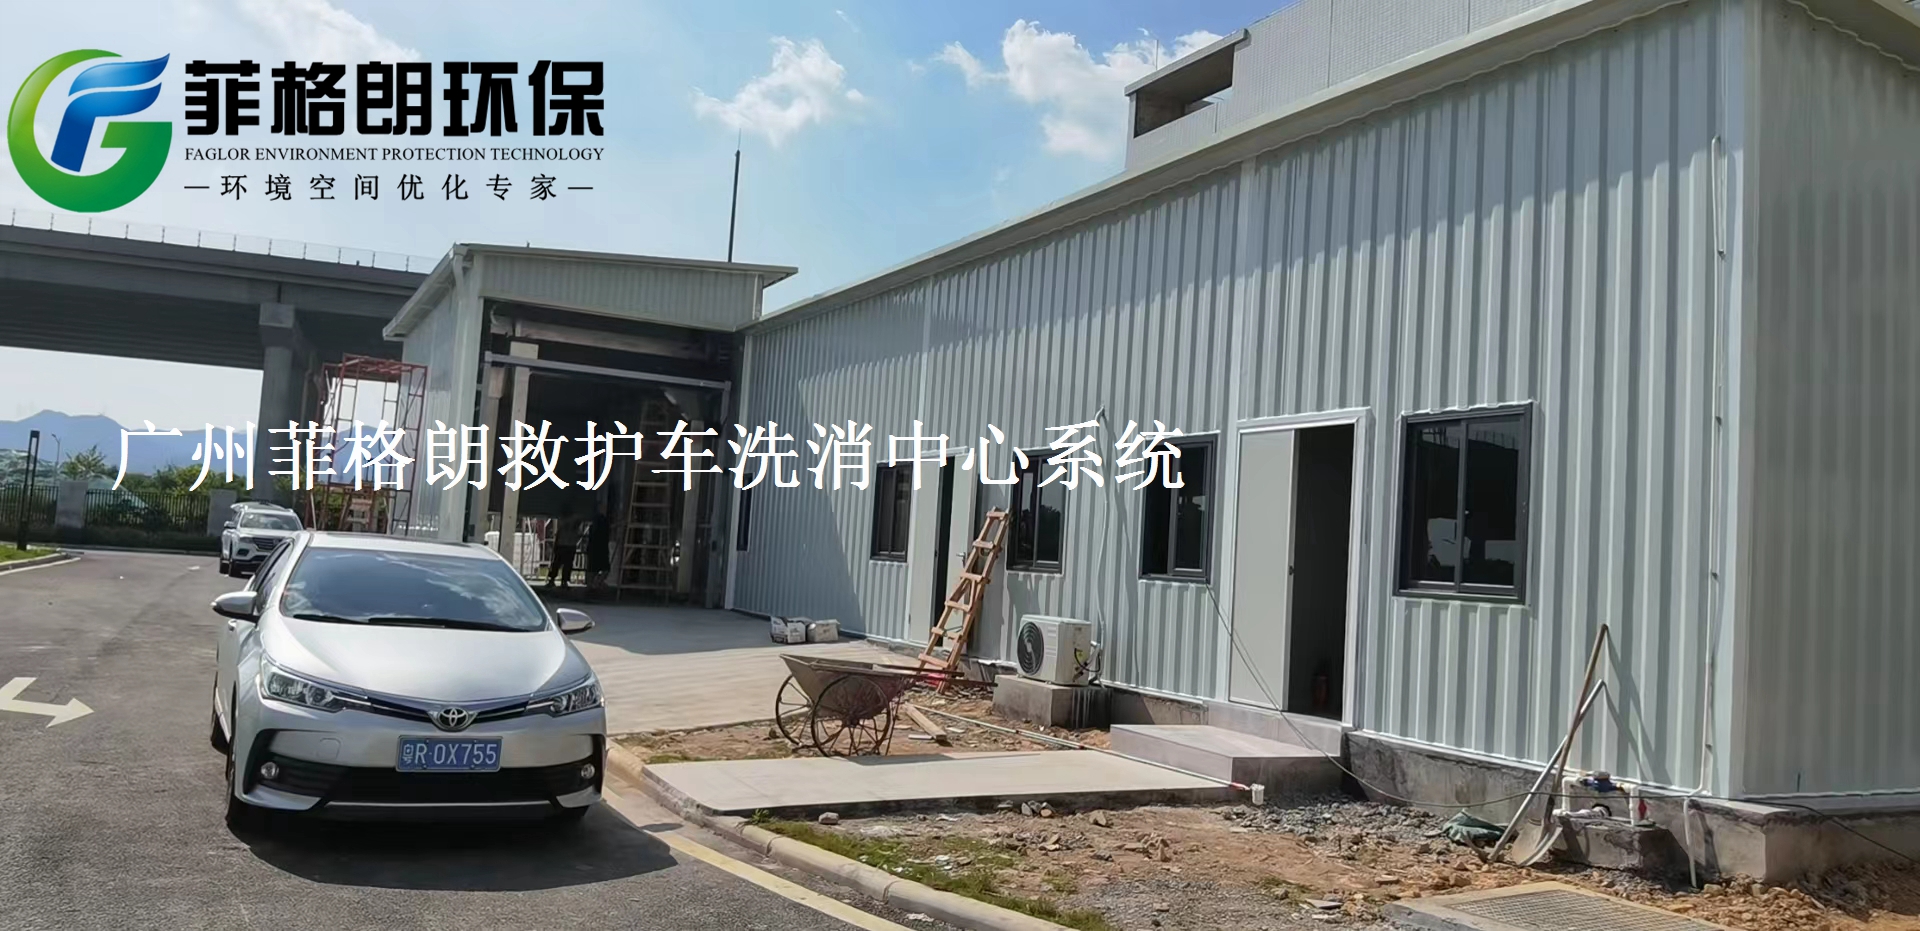 广东省妇幼保健院菲格朗救护车洗消中心系统8月正在施工插图4